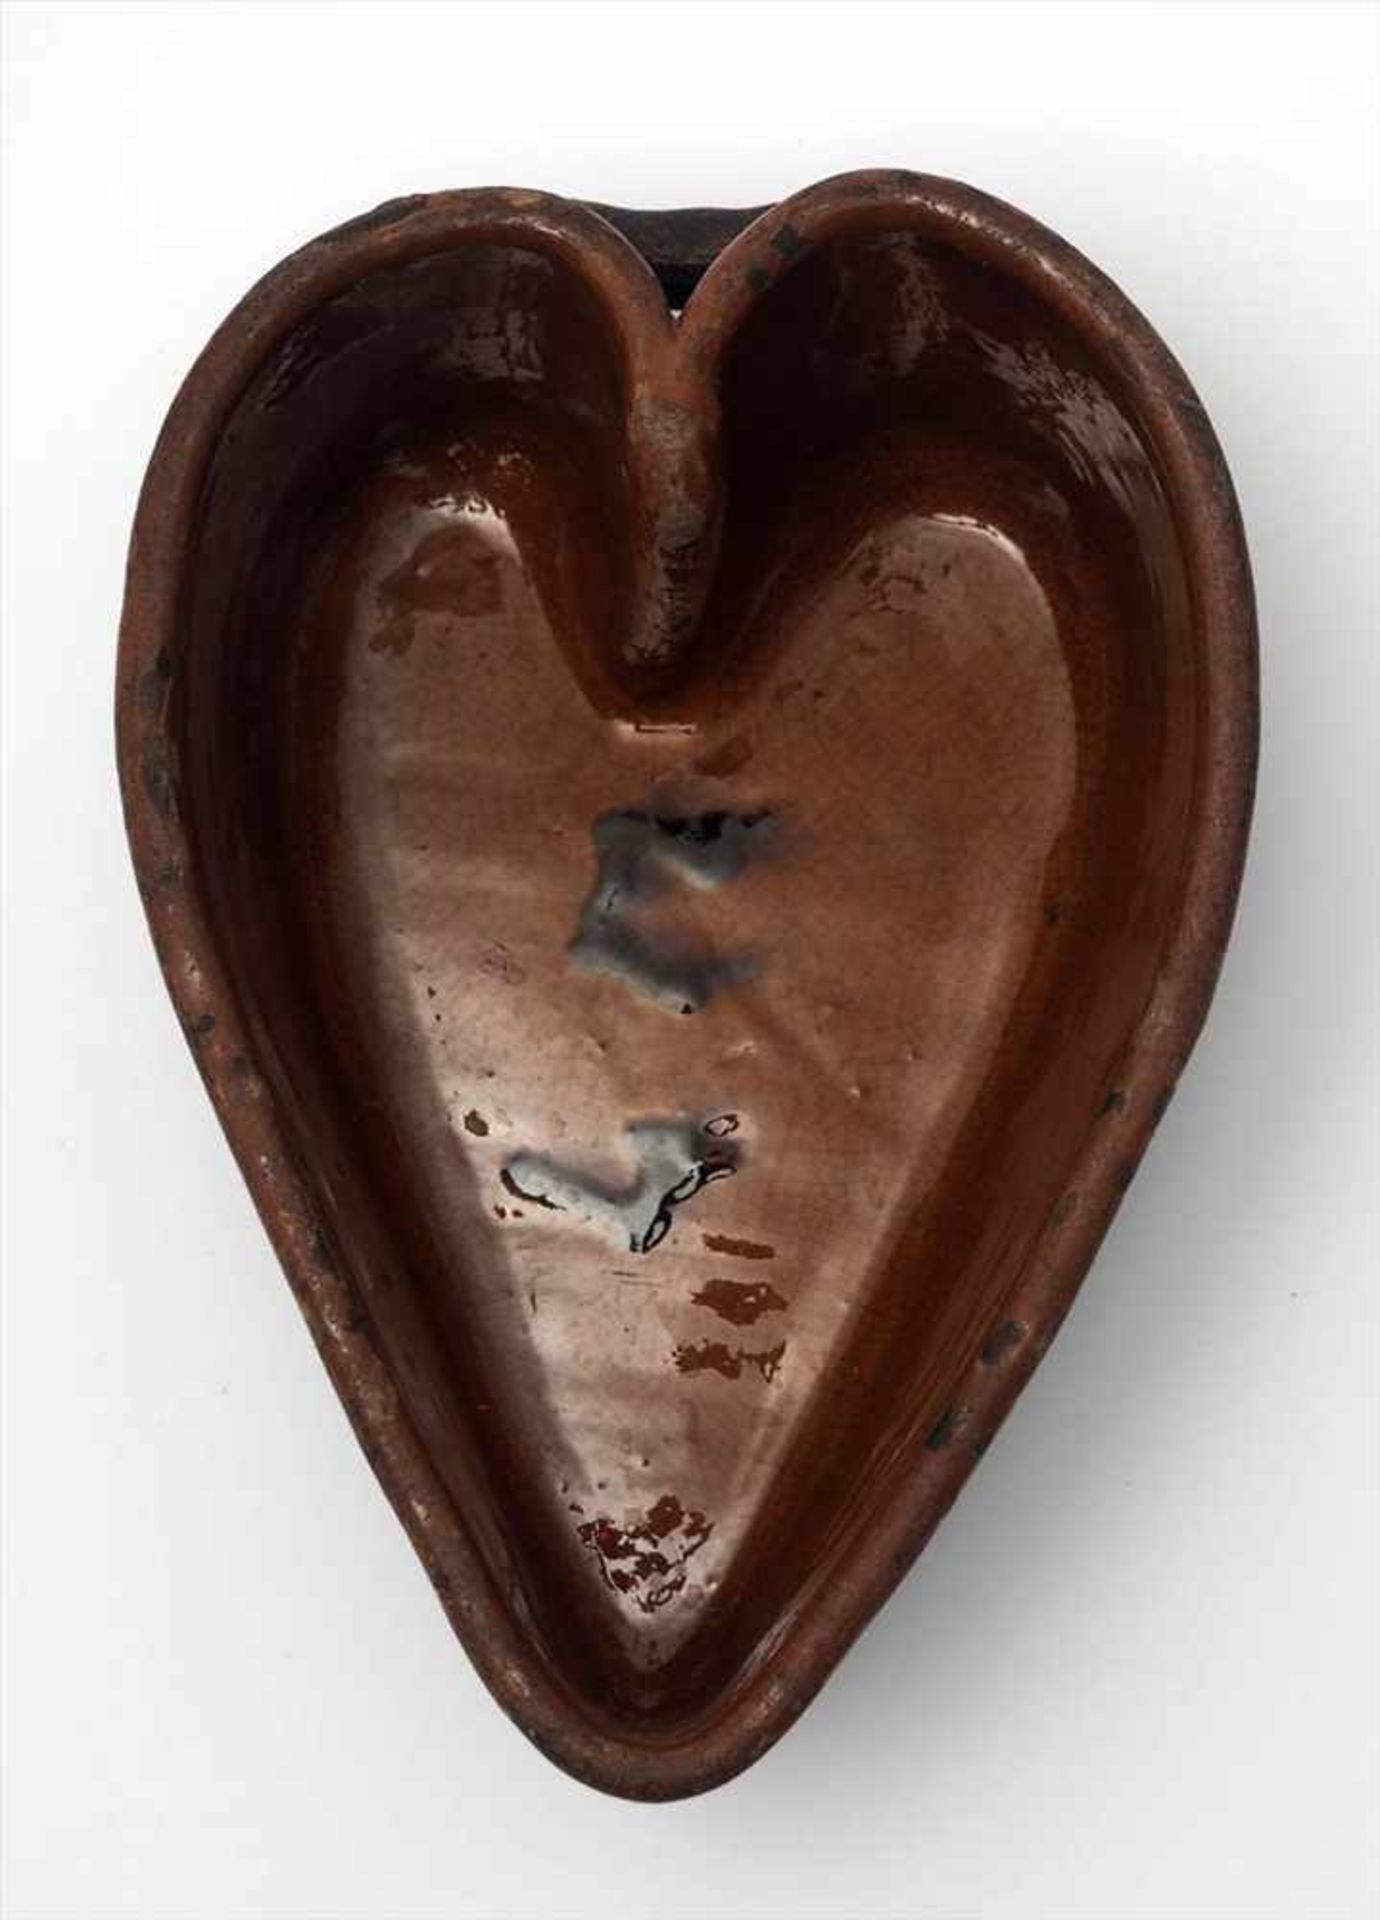 Kuchenform, Schwarzwald, 19.Jhdt.In Form eines Herzens. Innen braun glasiert. L.21cm.Dazu eine - Image 3 of 5